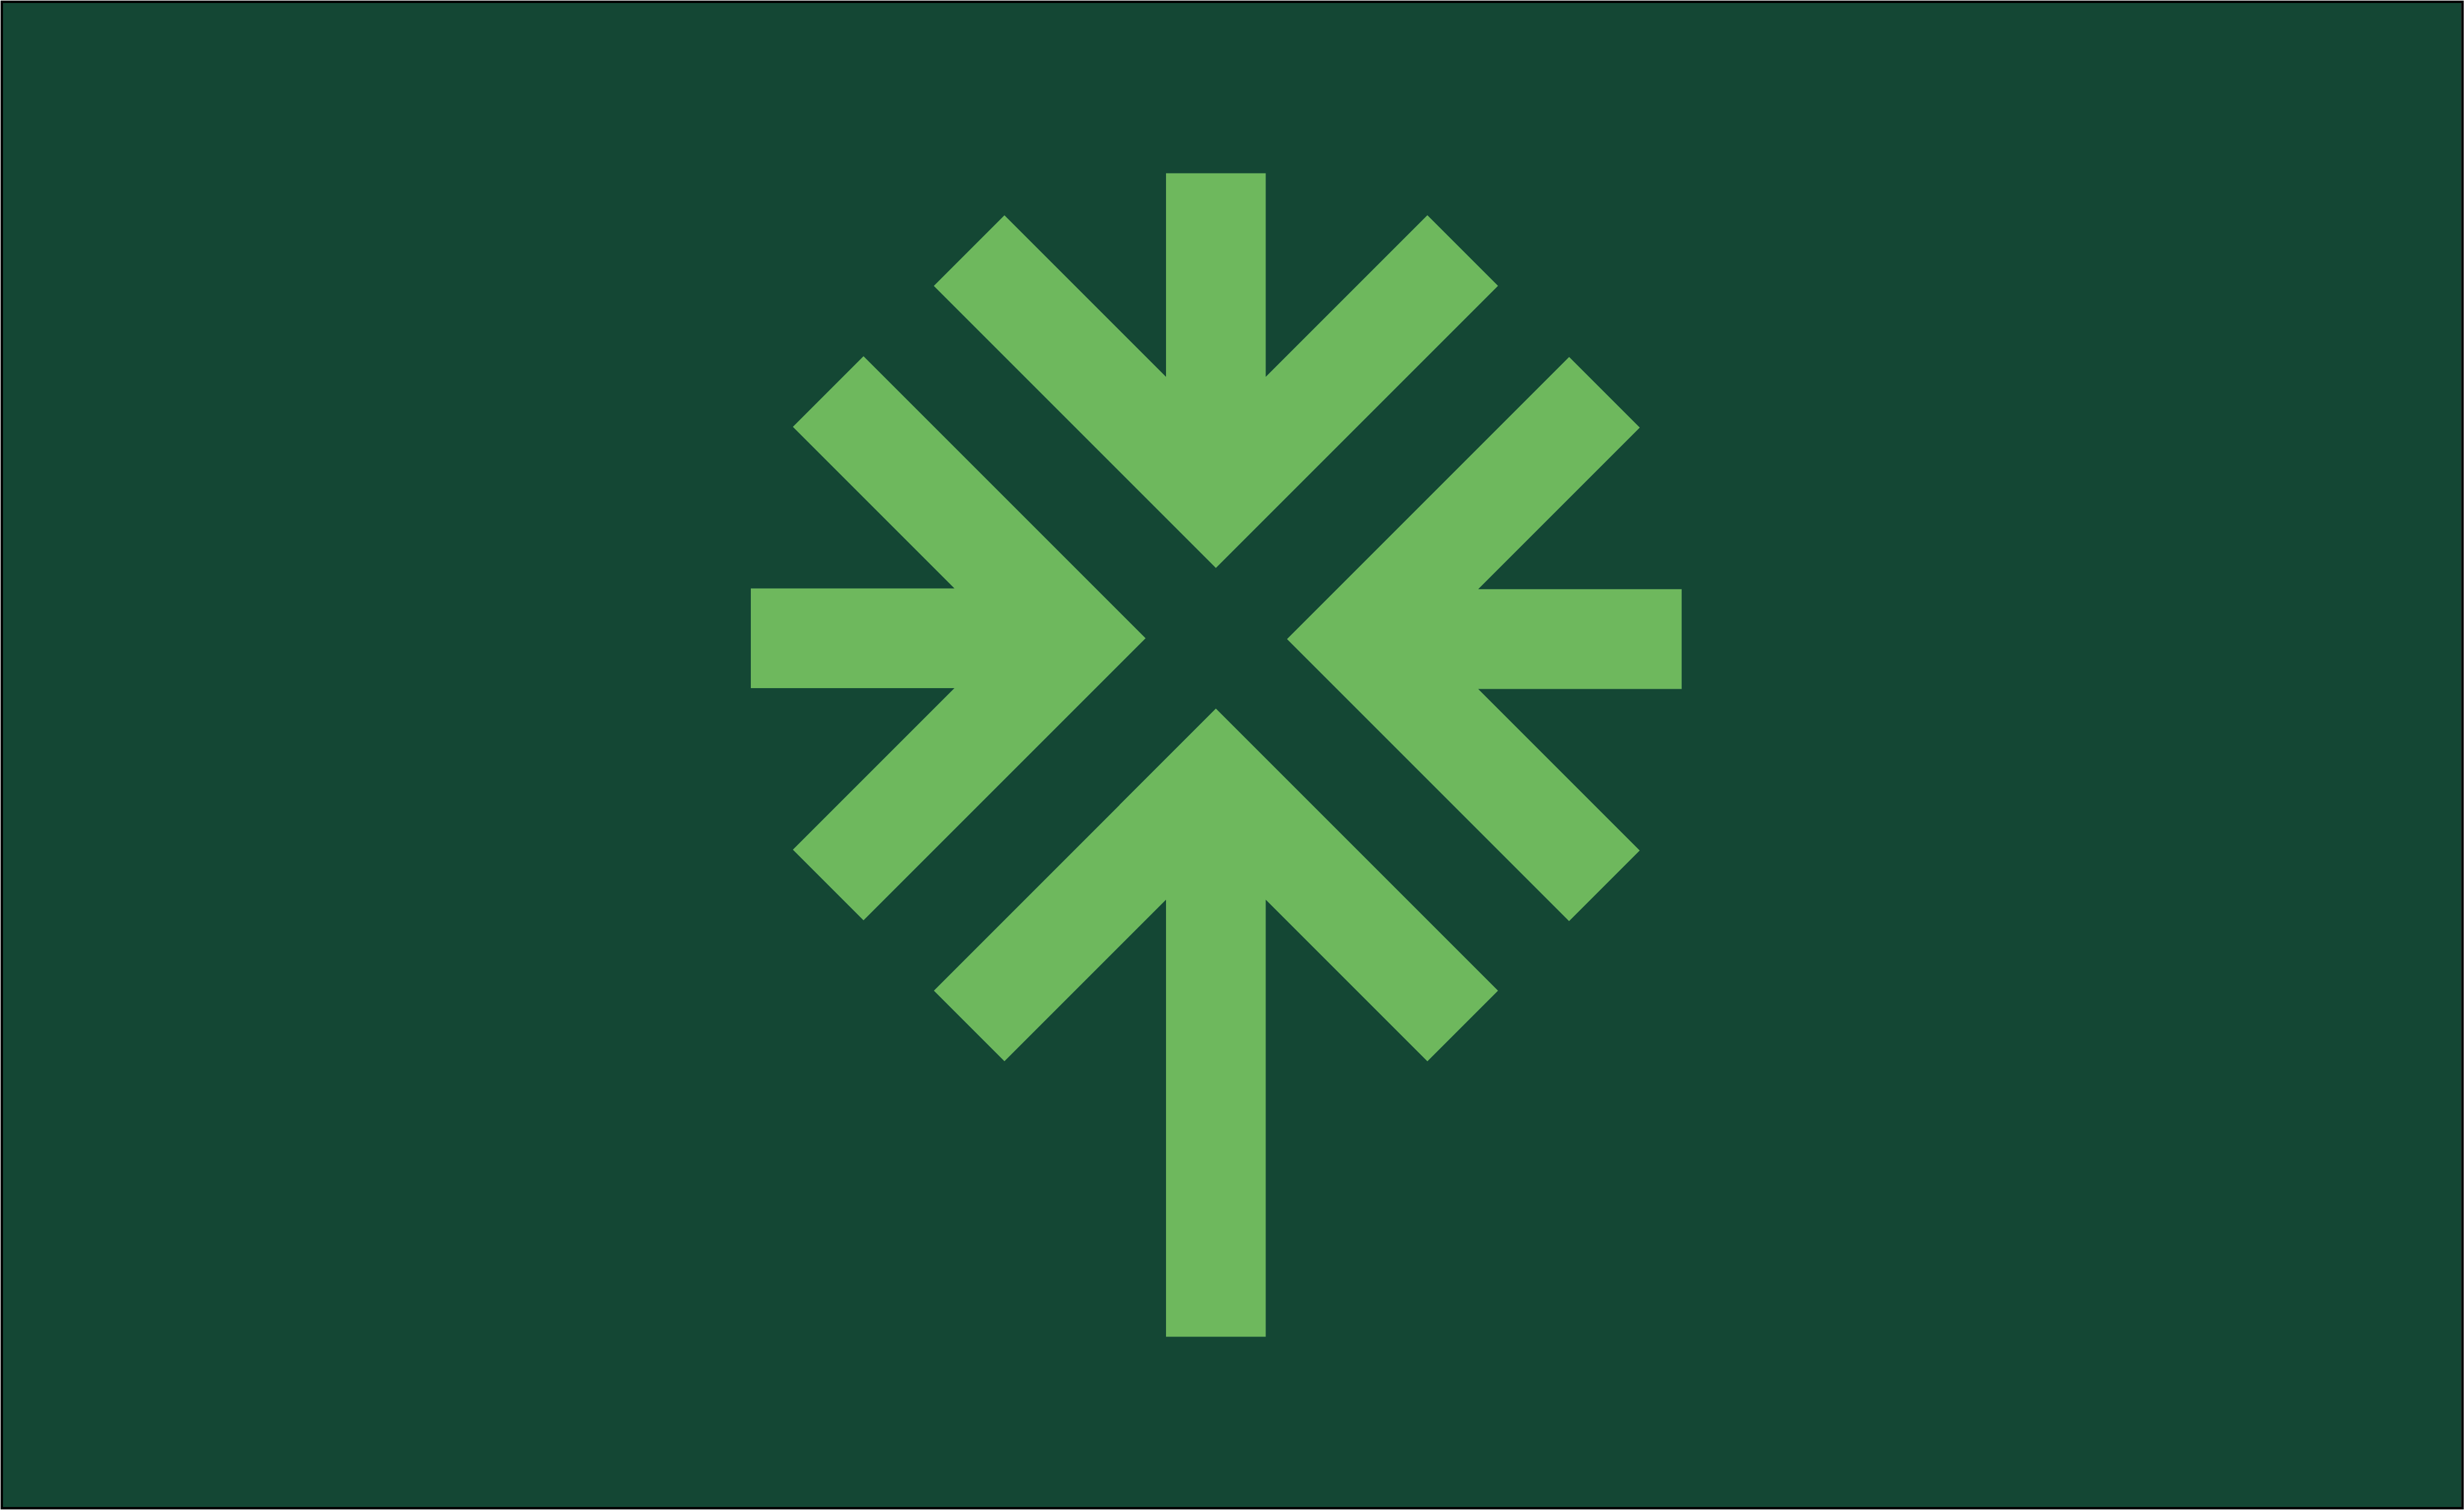 Ett stiliserat pilträd, bestående av fyra pilar som pekar mot en mittpunkt. Det är Skånes nationalträd och symbolen för det delade resandet i Malmö. Symbolen används så att det blir enkelt att hitta till ett delningsfordon och veta var de kan parkeras. Pilträdet är ljusgrönt och bakgrunden den är mot är mörkgrön.